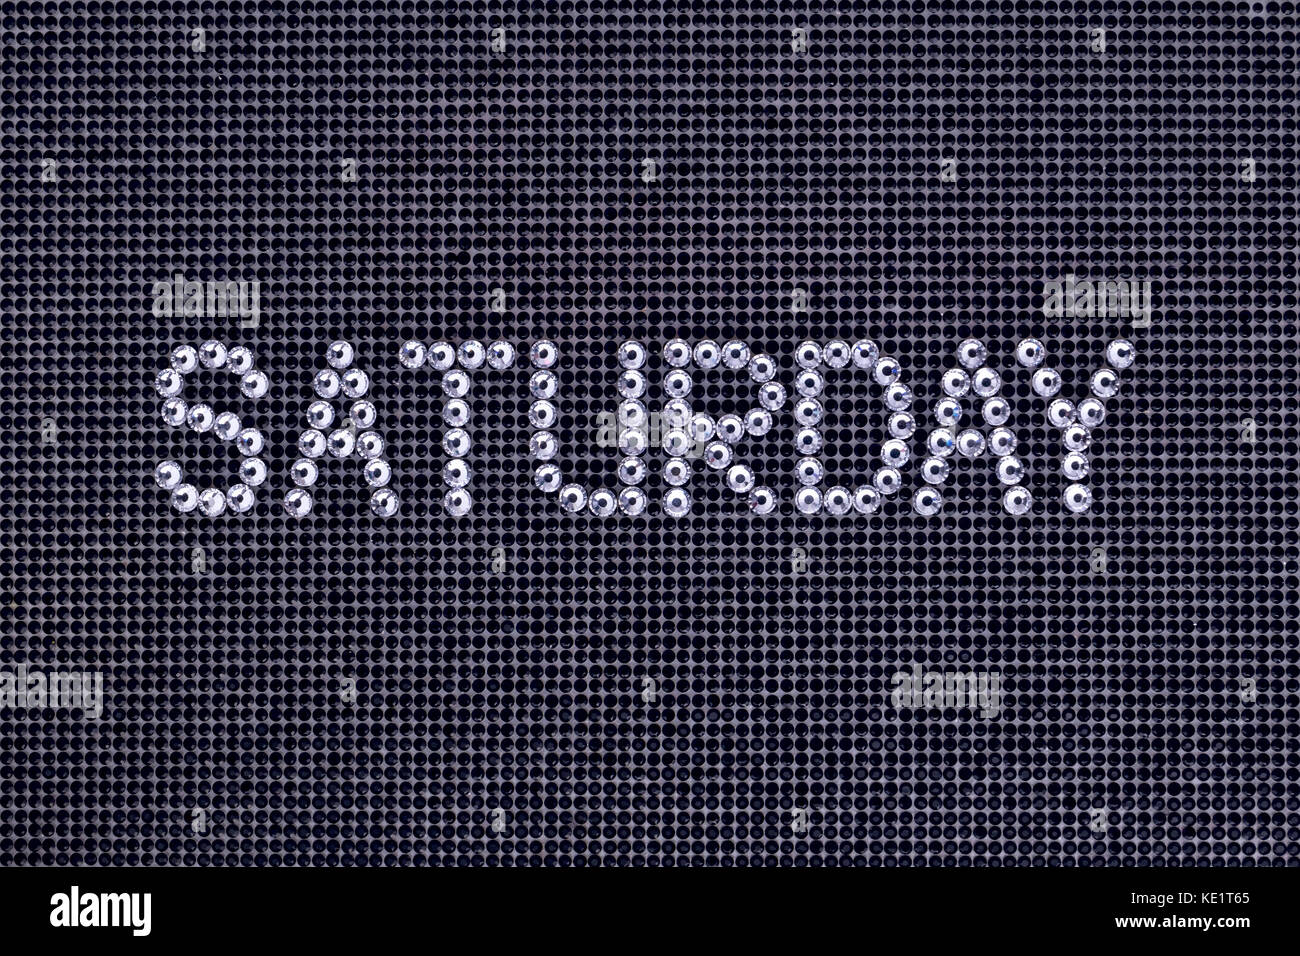 Il giorno della settimana, la parola sabato è realizzato strass colore cristallo su una tela nera sullo sfondo Foto Stock